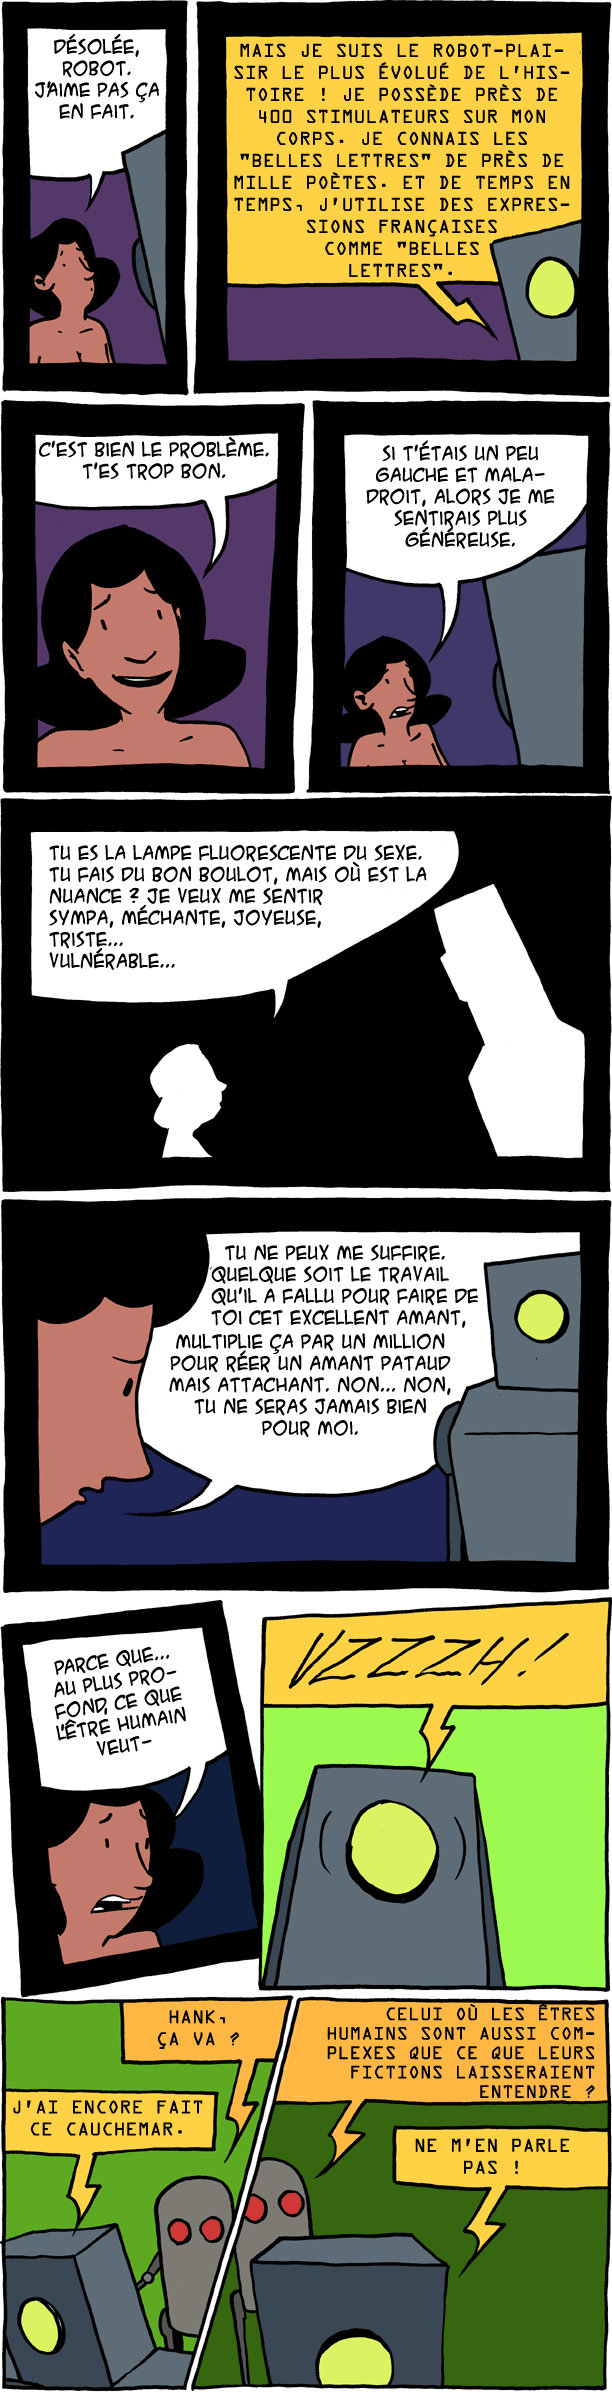 robot-plaisir 4000